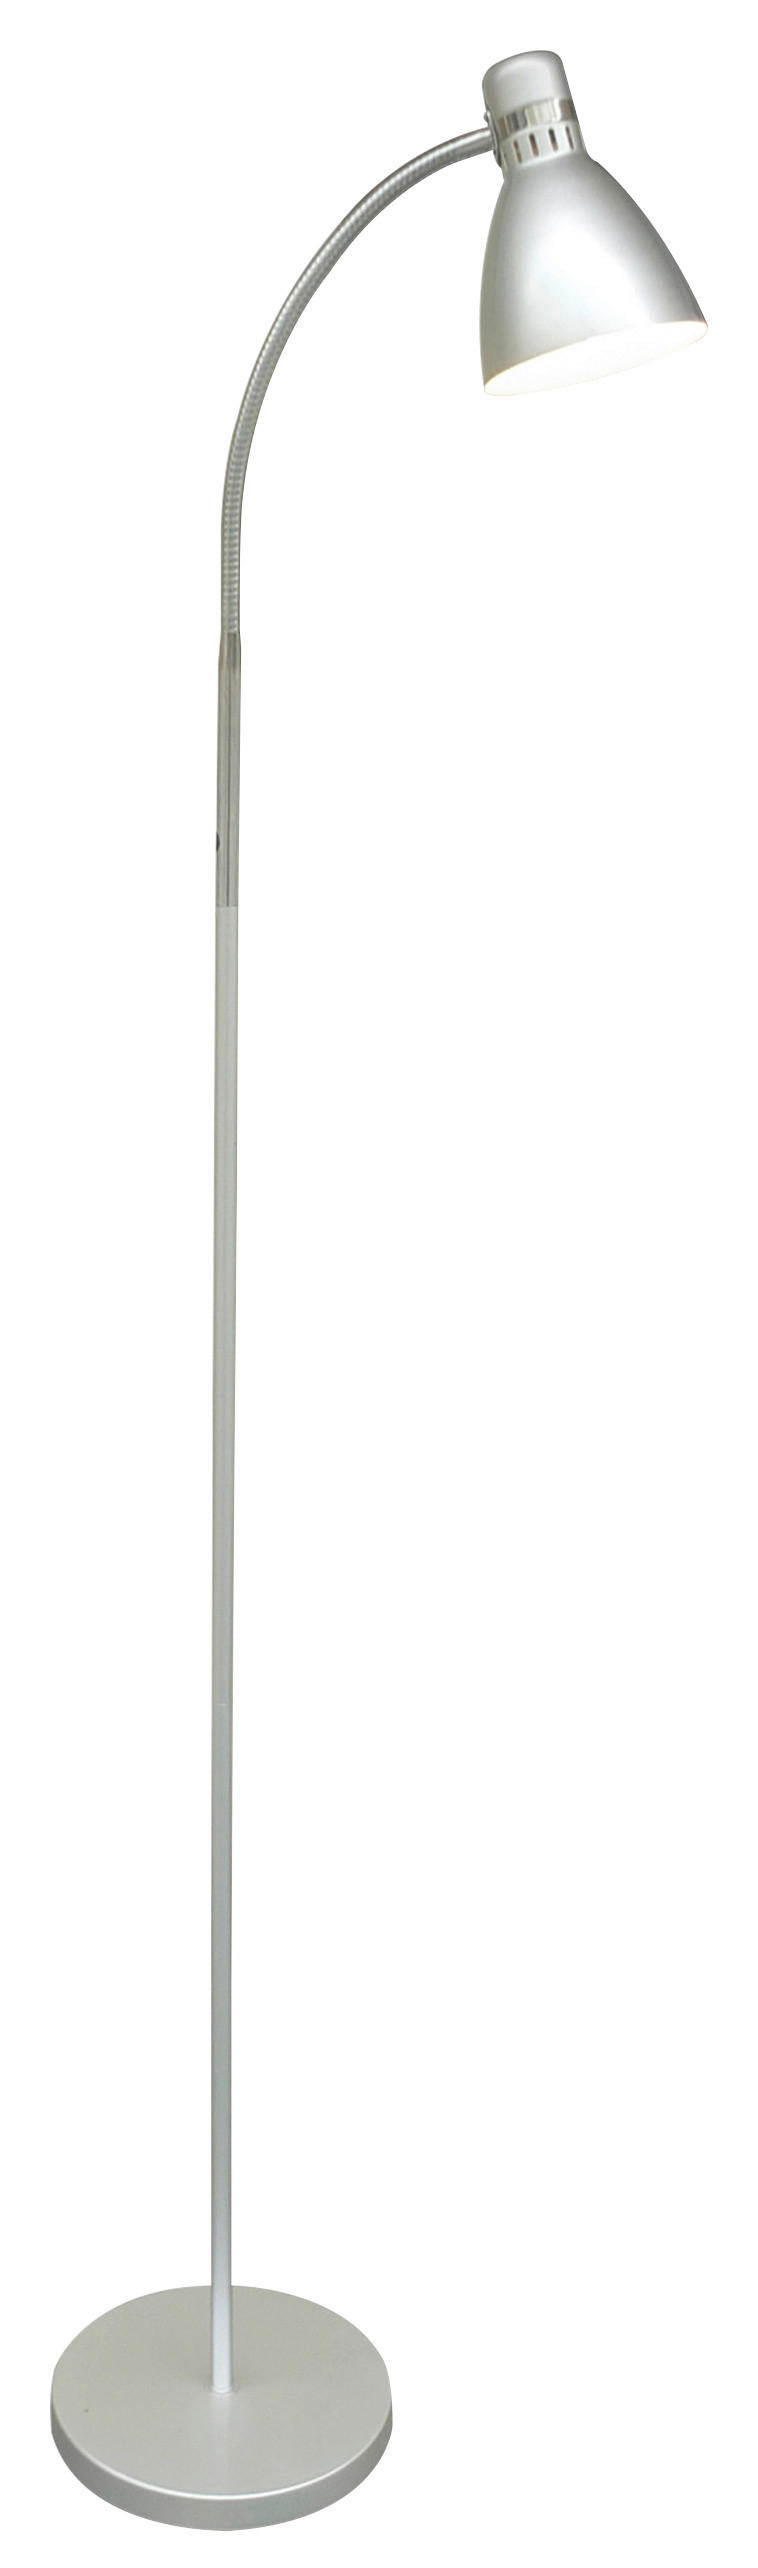 STEHLEUCHTE 22/155 cm    - Silberfarben, Basics, Kunststoff/Metall (22/155cm) - Boxxx